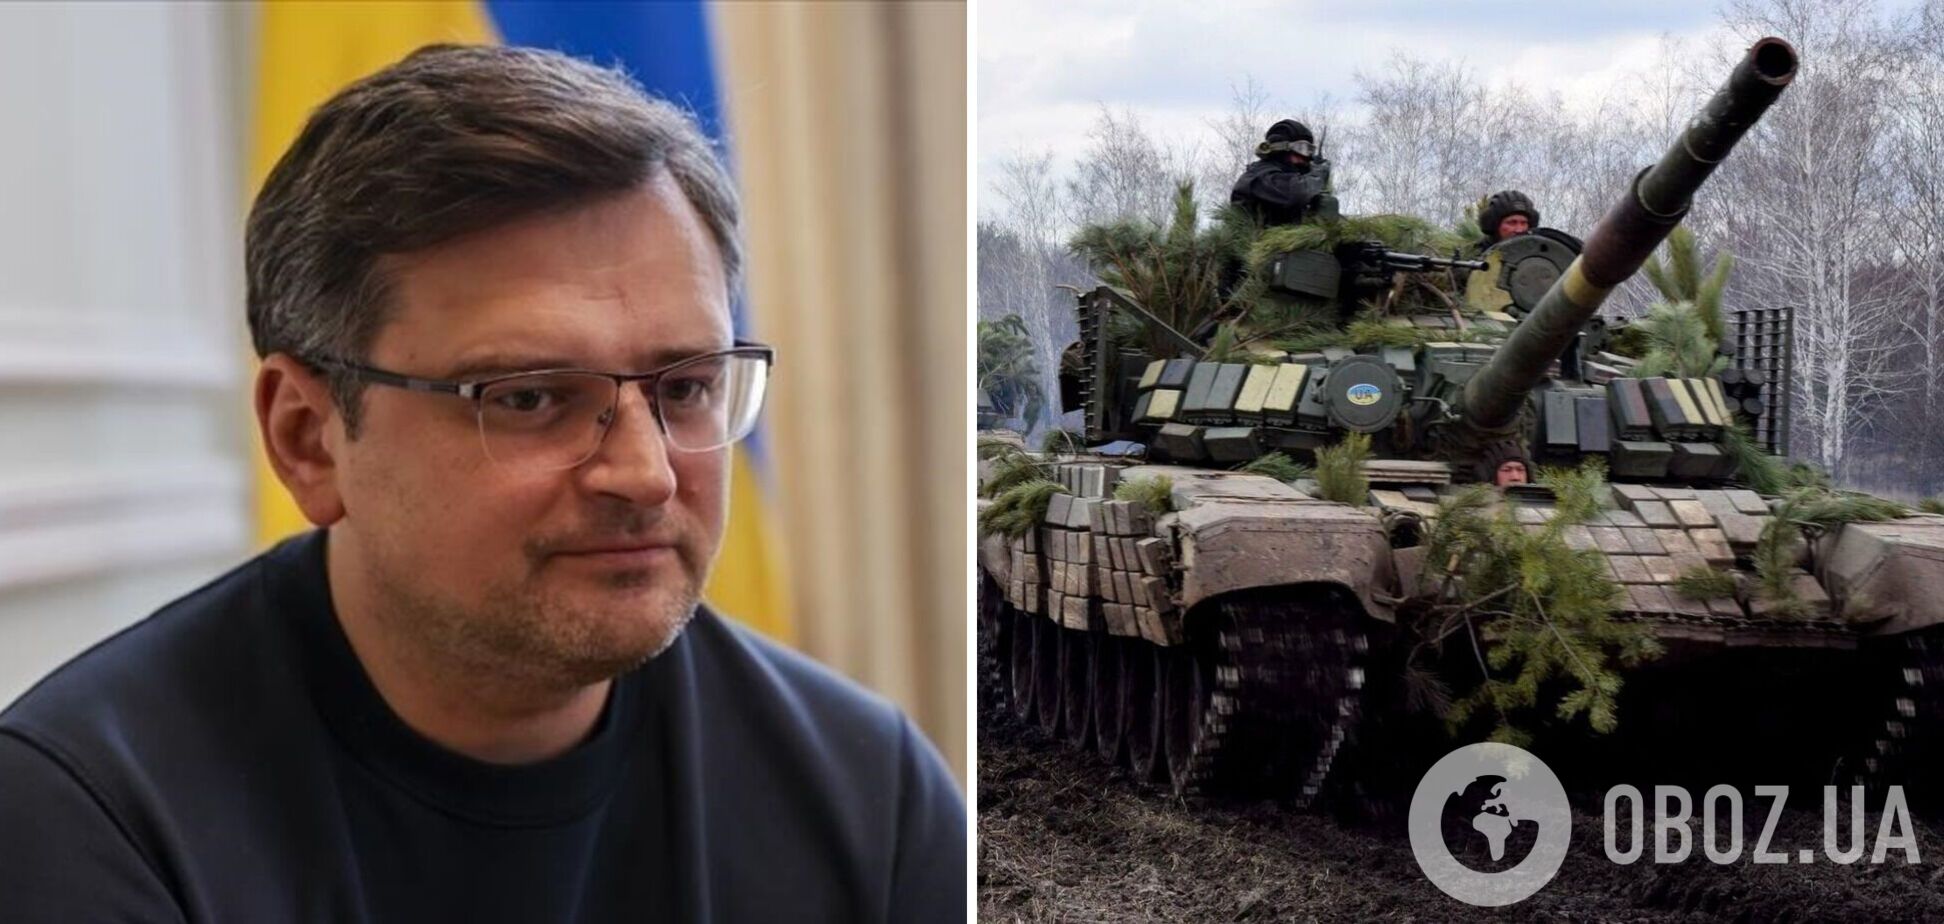 Танки – единственная большая тема, на которую на Западе все еще существует табу: Кулеба о предоставлении Украине военной помощи